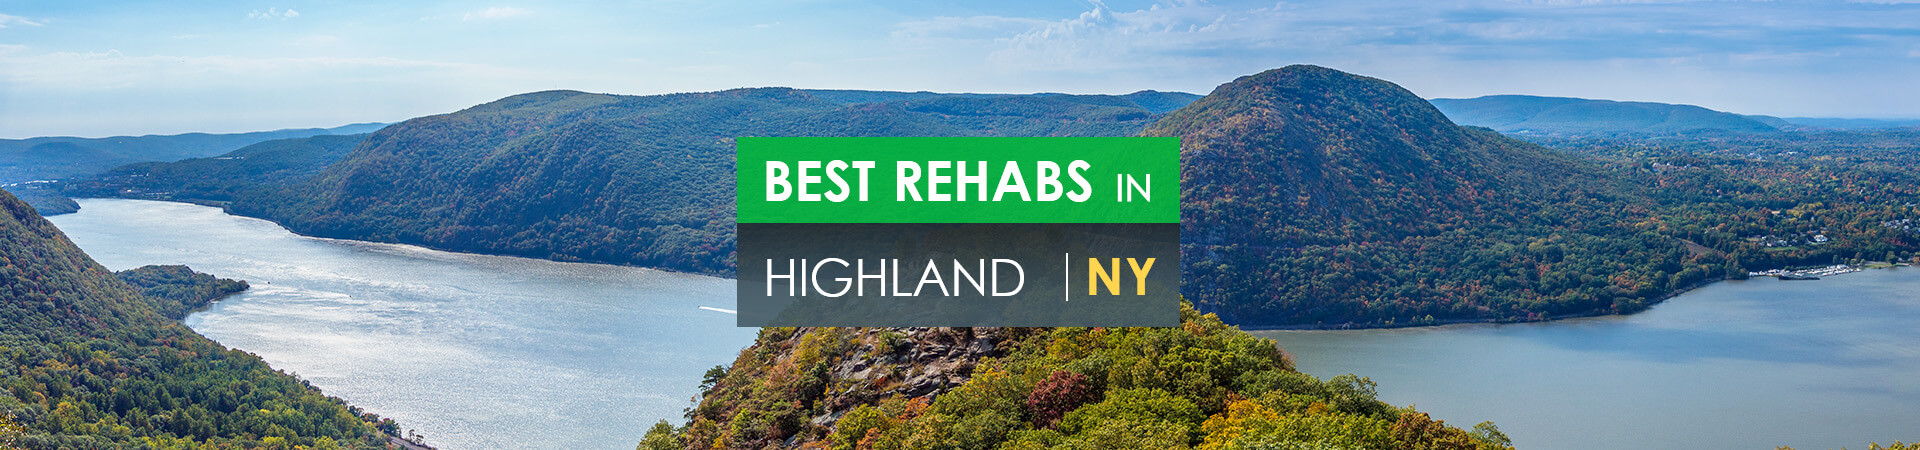 Best rehabs in Highland, NY